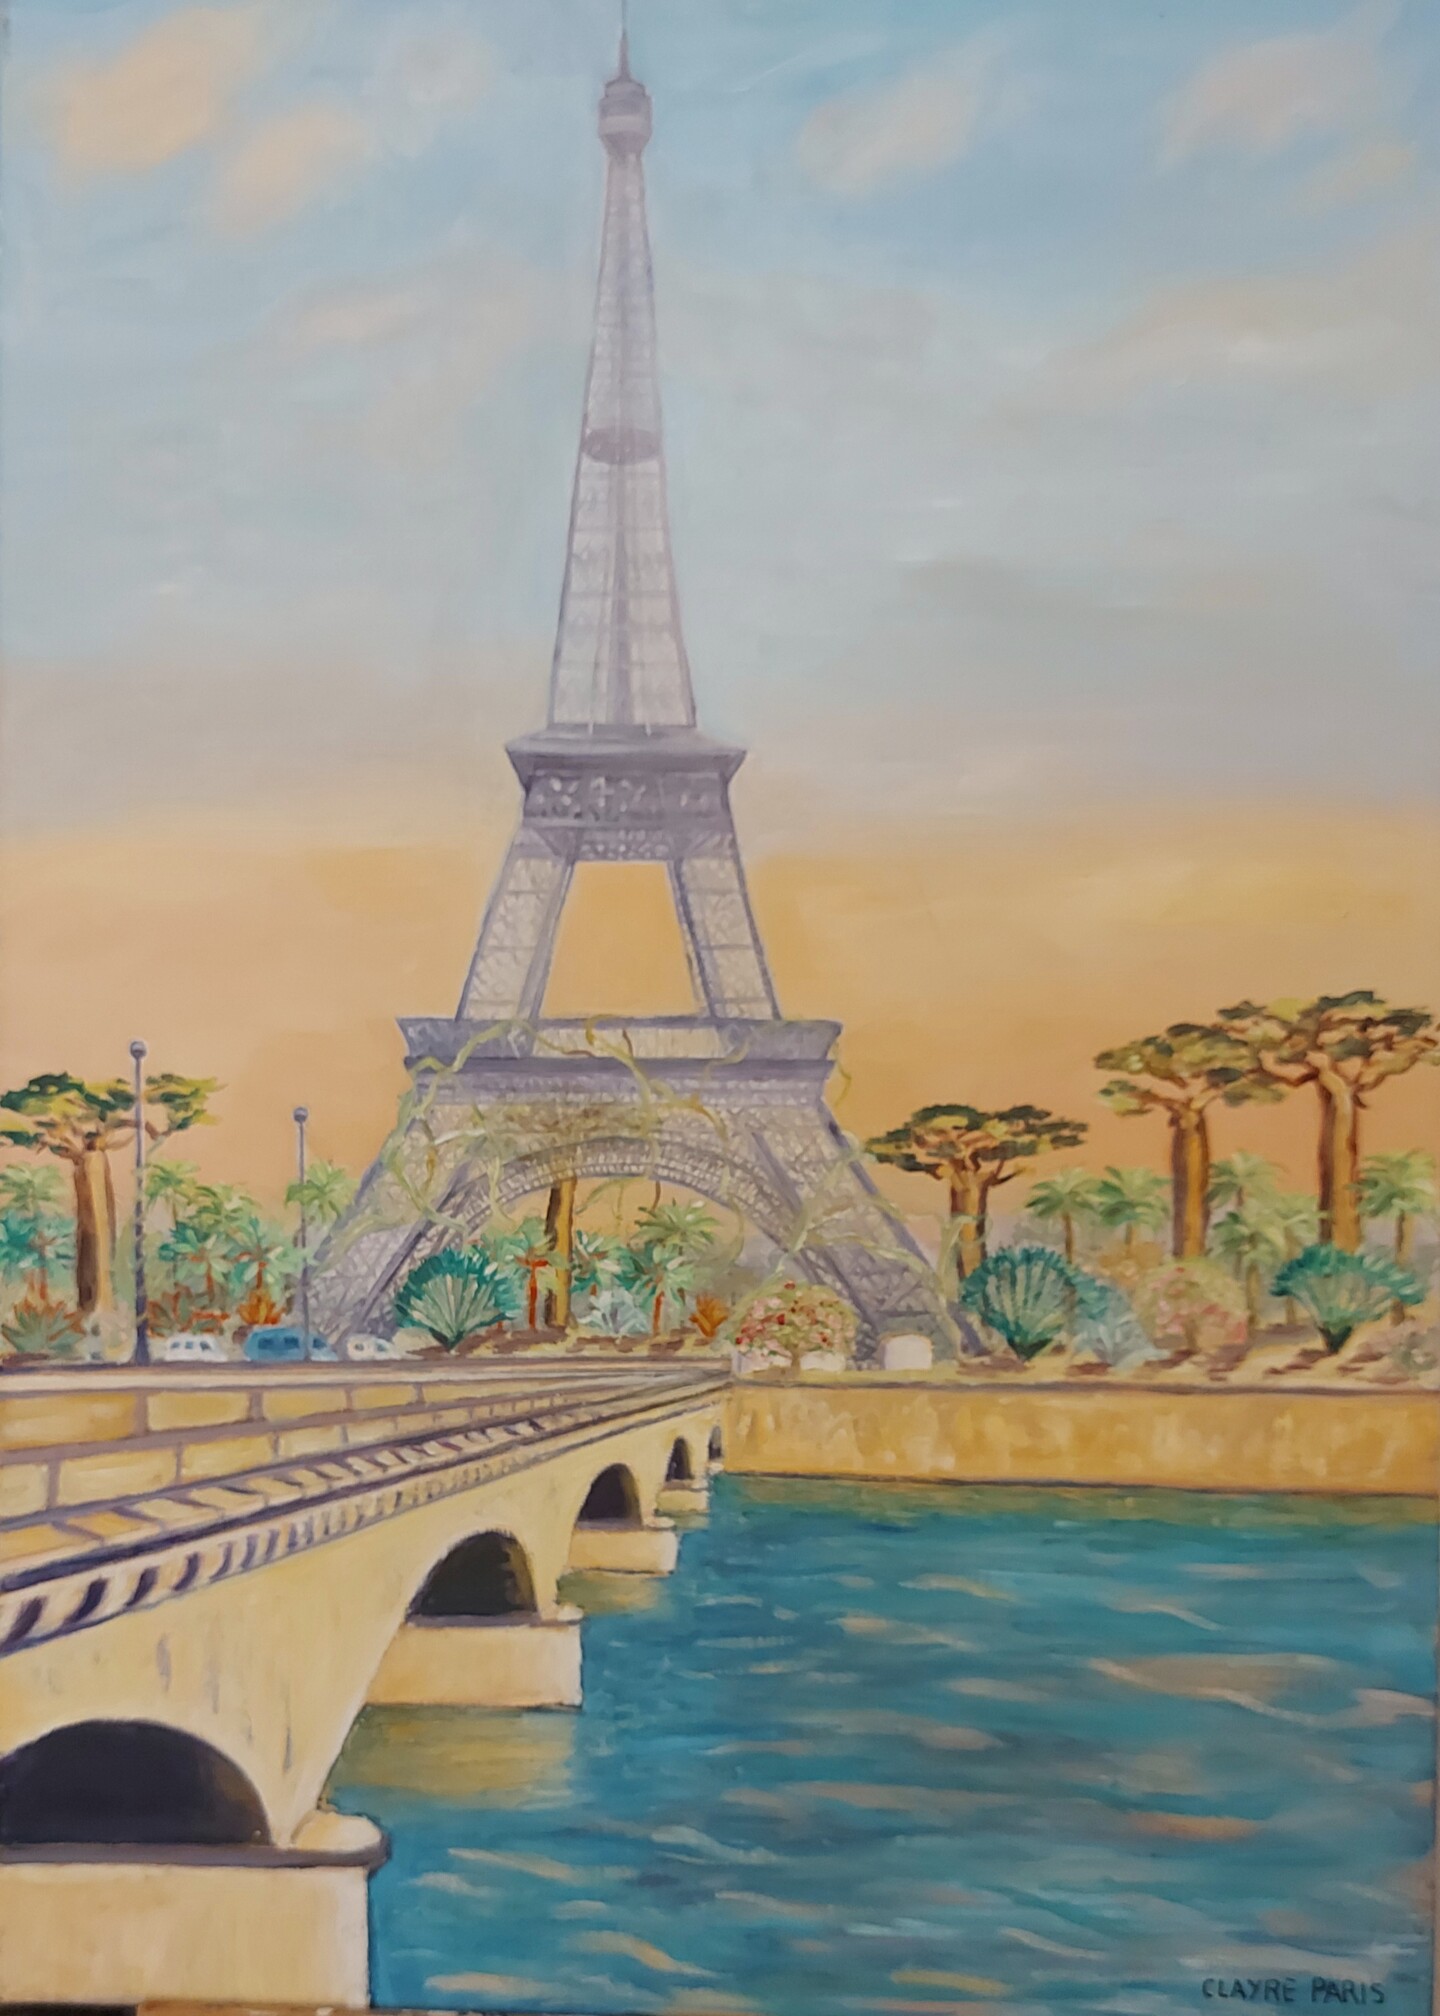 La Tour Eiffel En 2200, Painting by Clayre Paris | Artmajeur